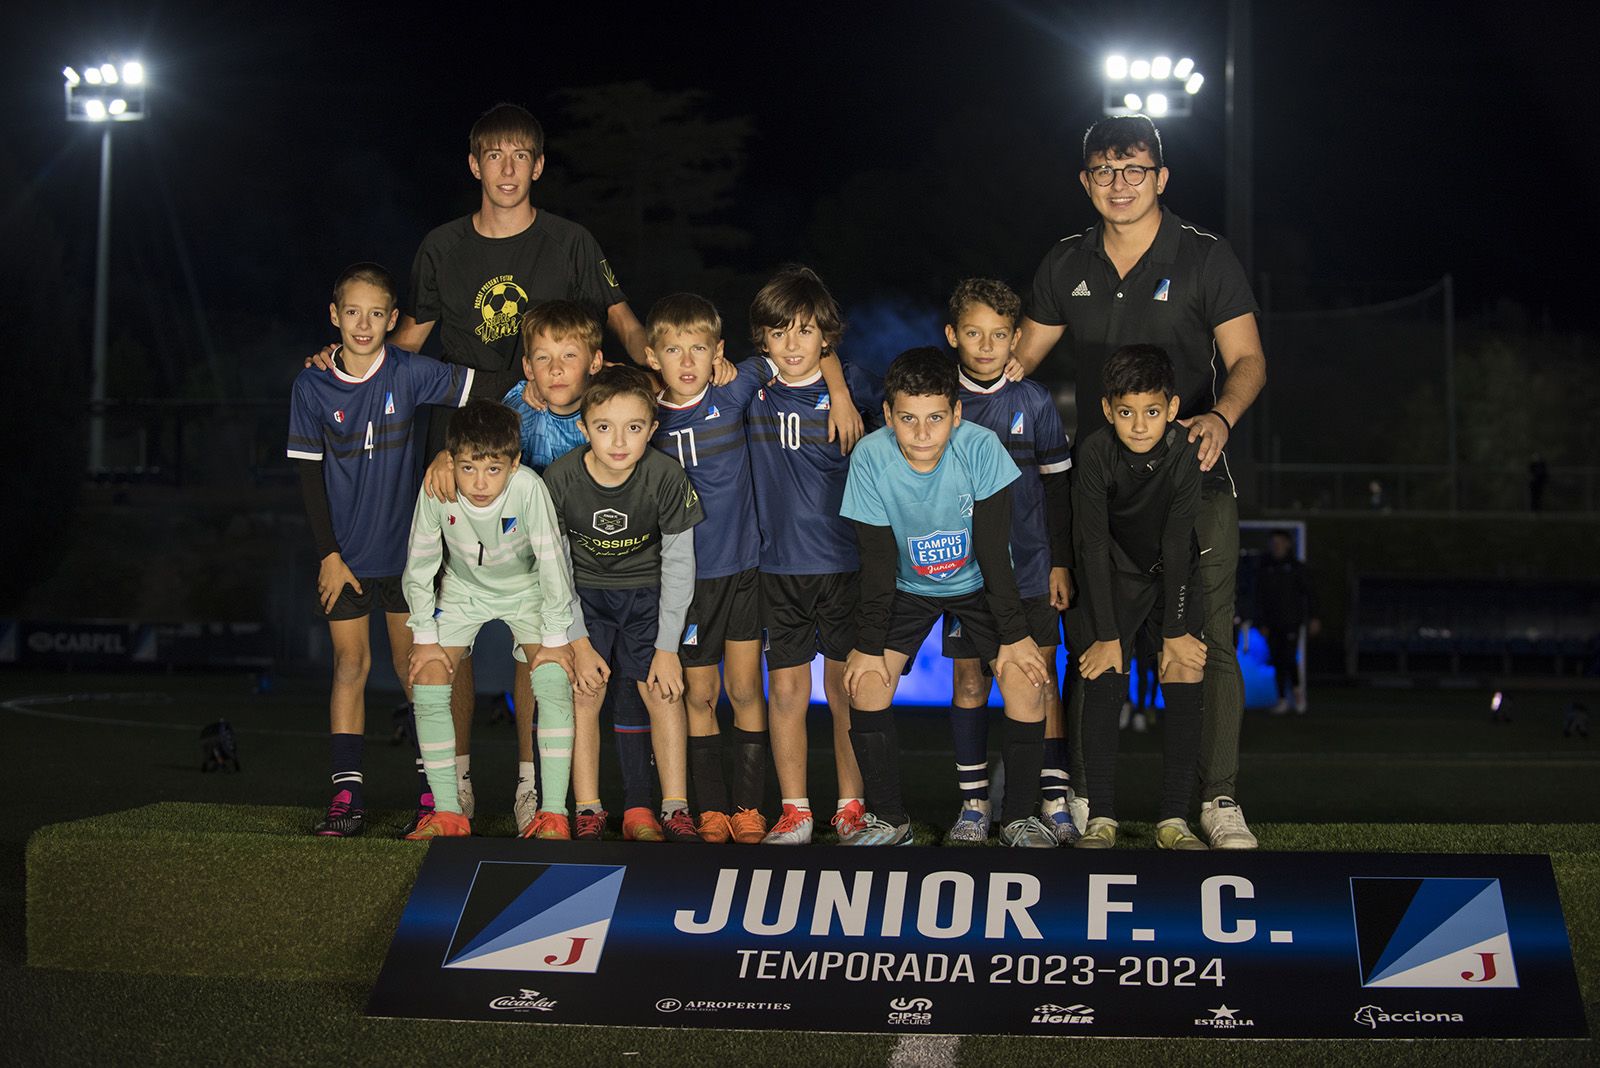 Presentació d'equips de la secció de futbol del Junior FC. FOTO: Bernat Millet.